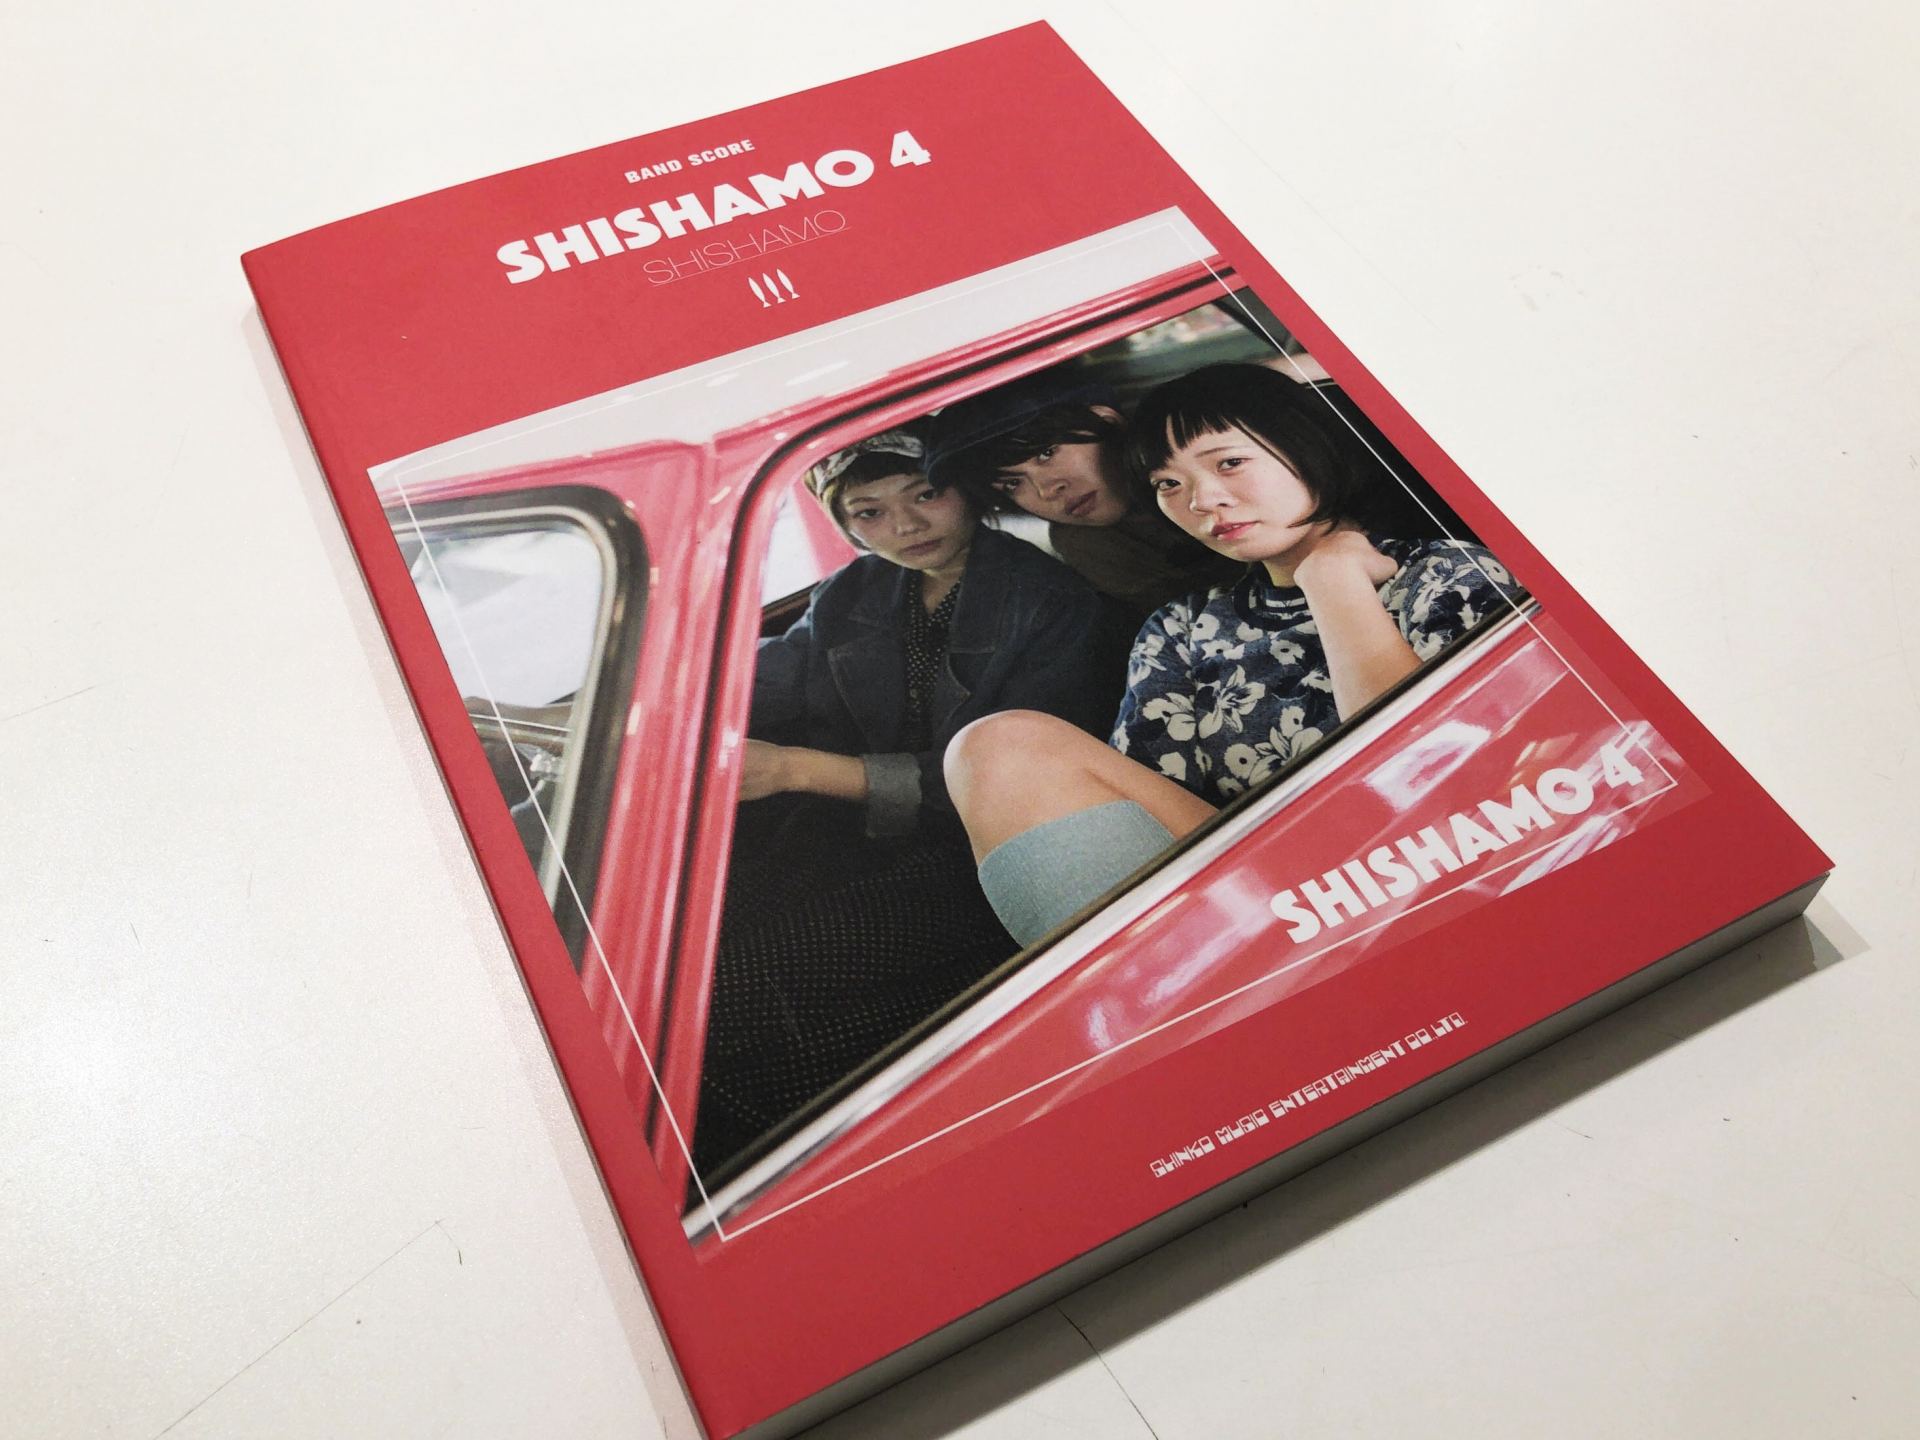 *SHISHAMO / SHISHAMO 4 みなさんこんにちは！]]楽譜担当の小田です！！ 本日、『第68回(2017年)NHK紅白歌合戦』に初出場を決めた、SHISHAMOの最新アルバム・マッチング・スコアが入荷しました！ SHISHAMOアルバム・マッチング・スコア「SHISHAMO 4」では […]